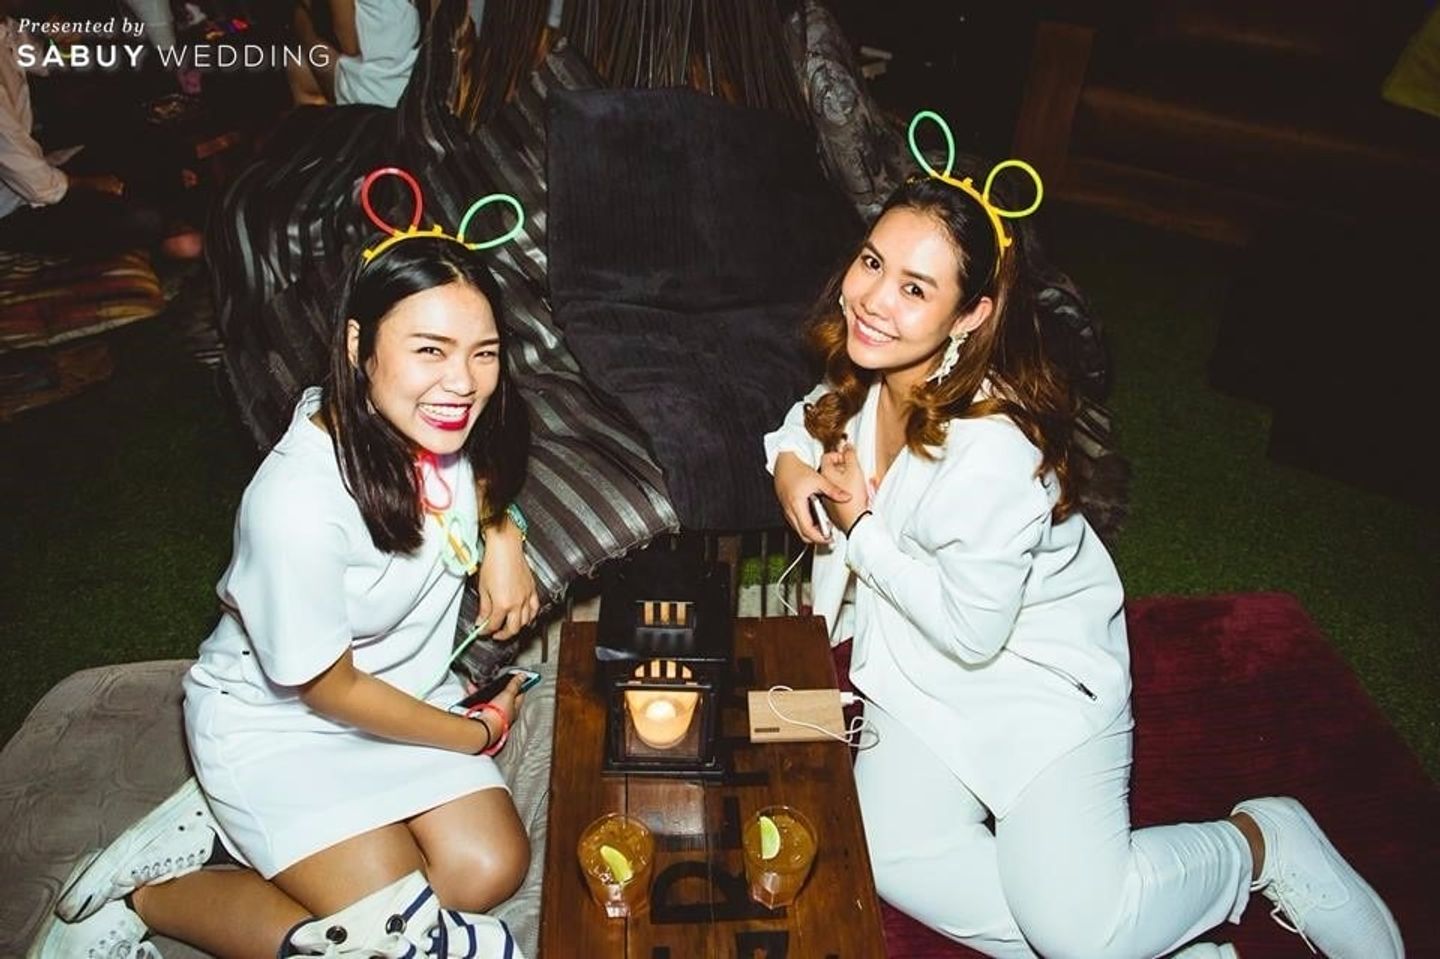 อาฟเตอร์ปาร์ตี้ รีวิวงานแต่งปาร์ตี้แซ่บซี๊ด ปิดผับรับแสงนีออนไลท์ในธีม Sneaker @The Peninsula Bangkok